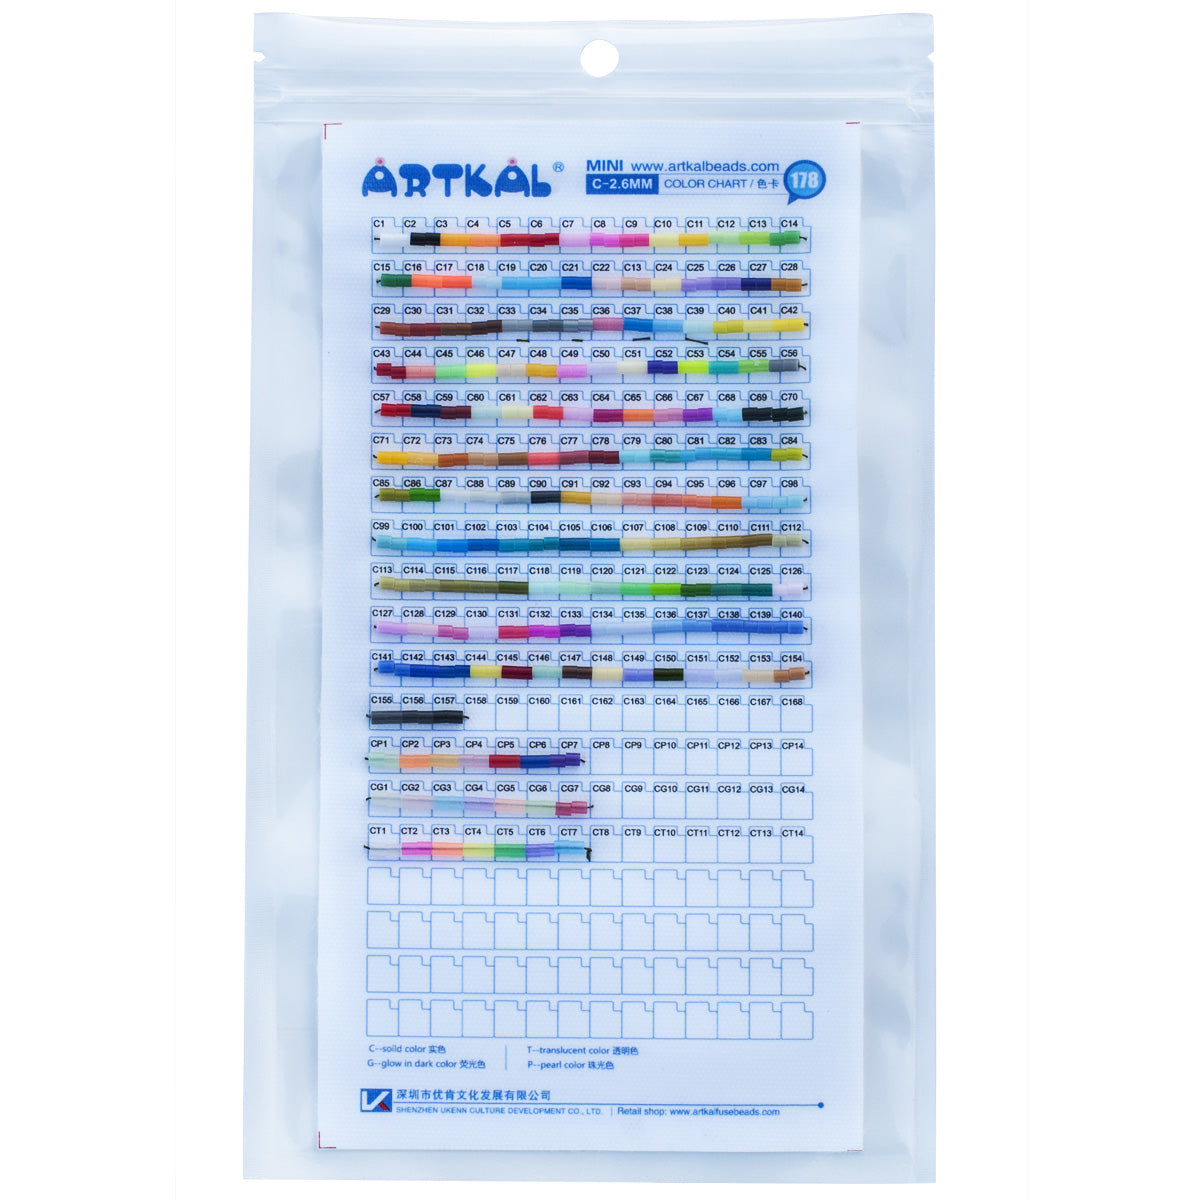 NOUVEAU-Artkal Beads Physical Color Chart